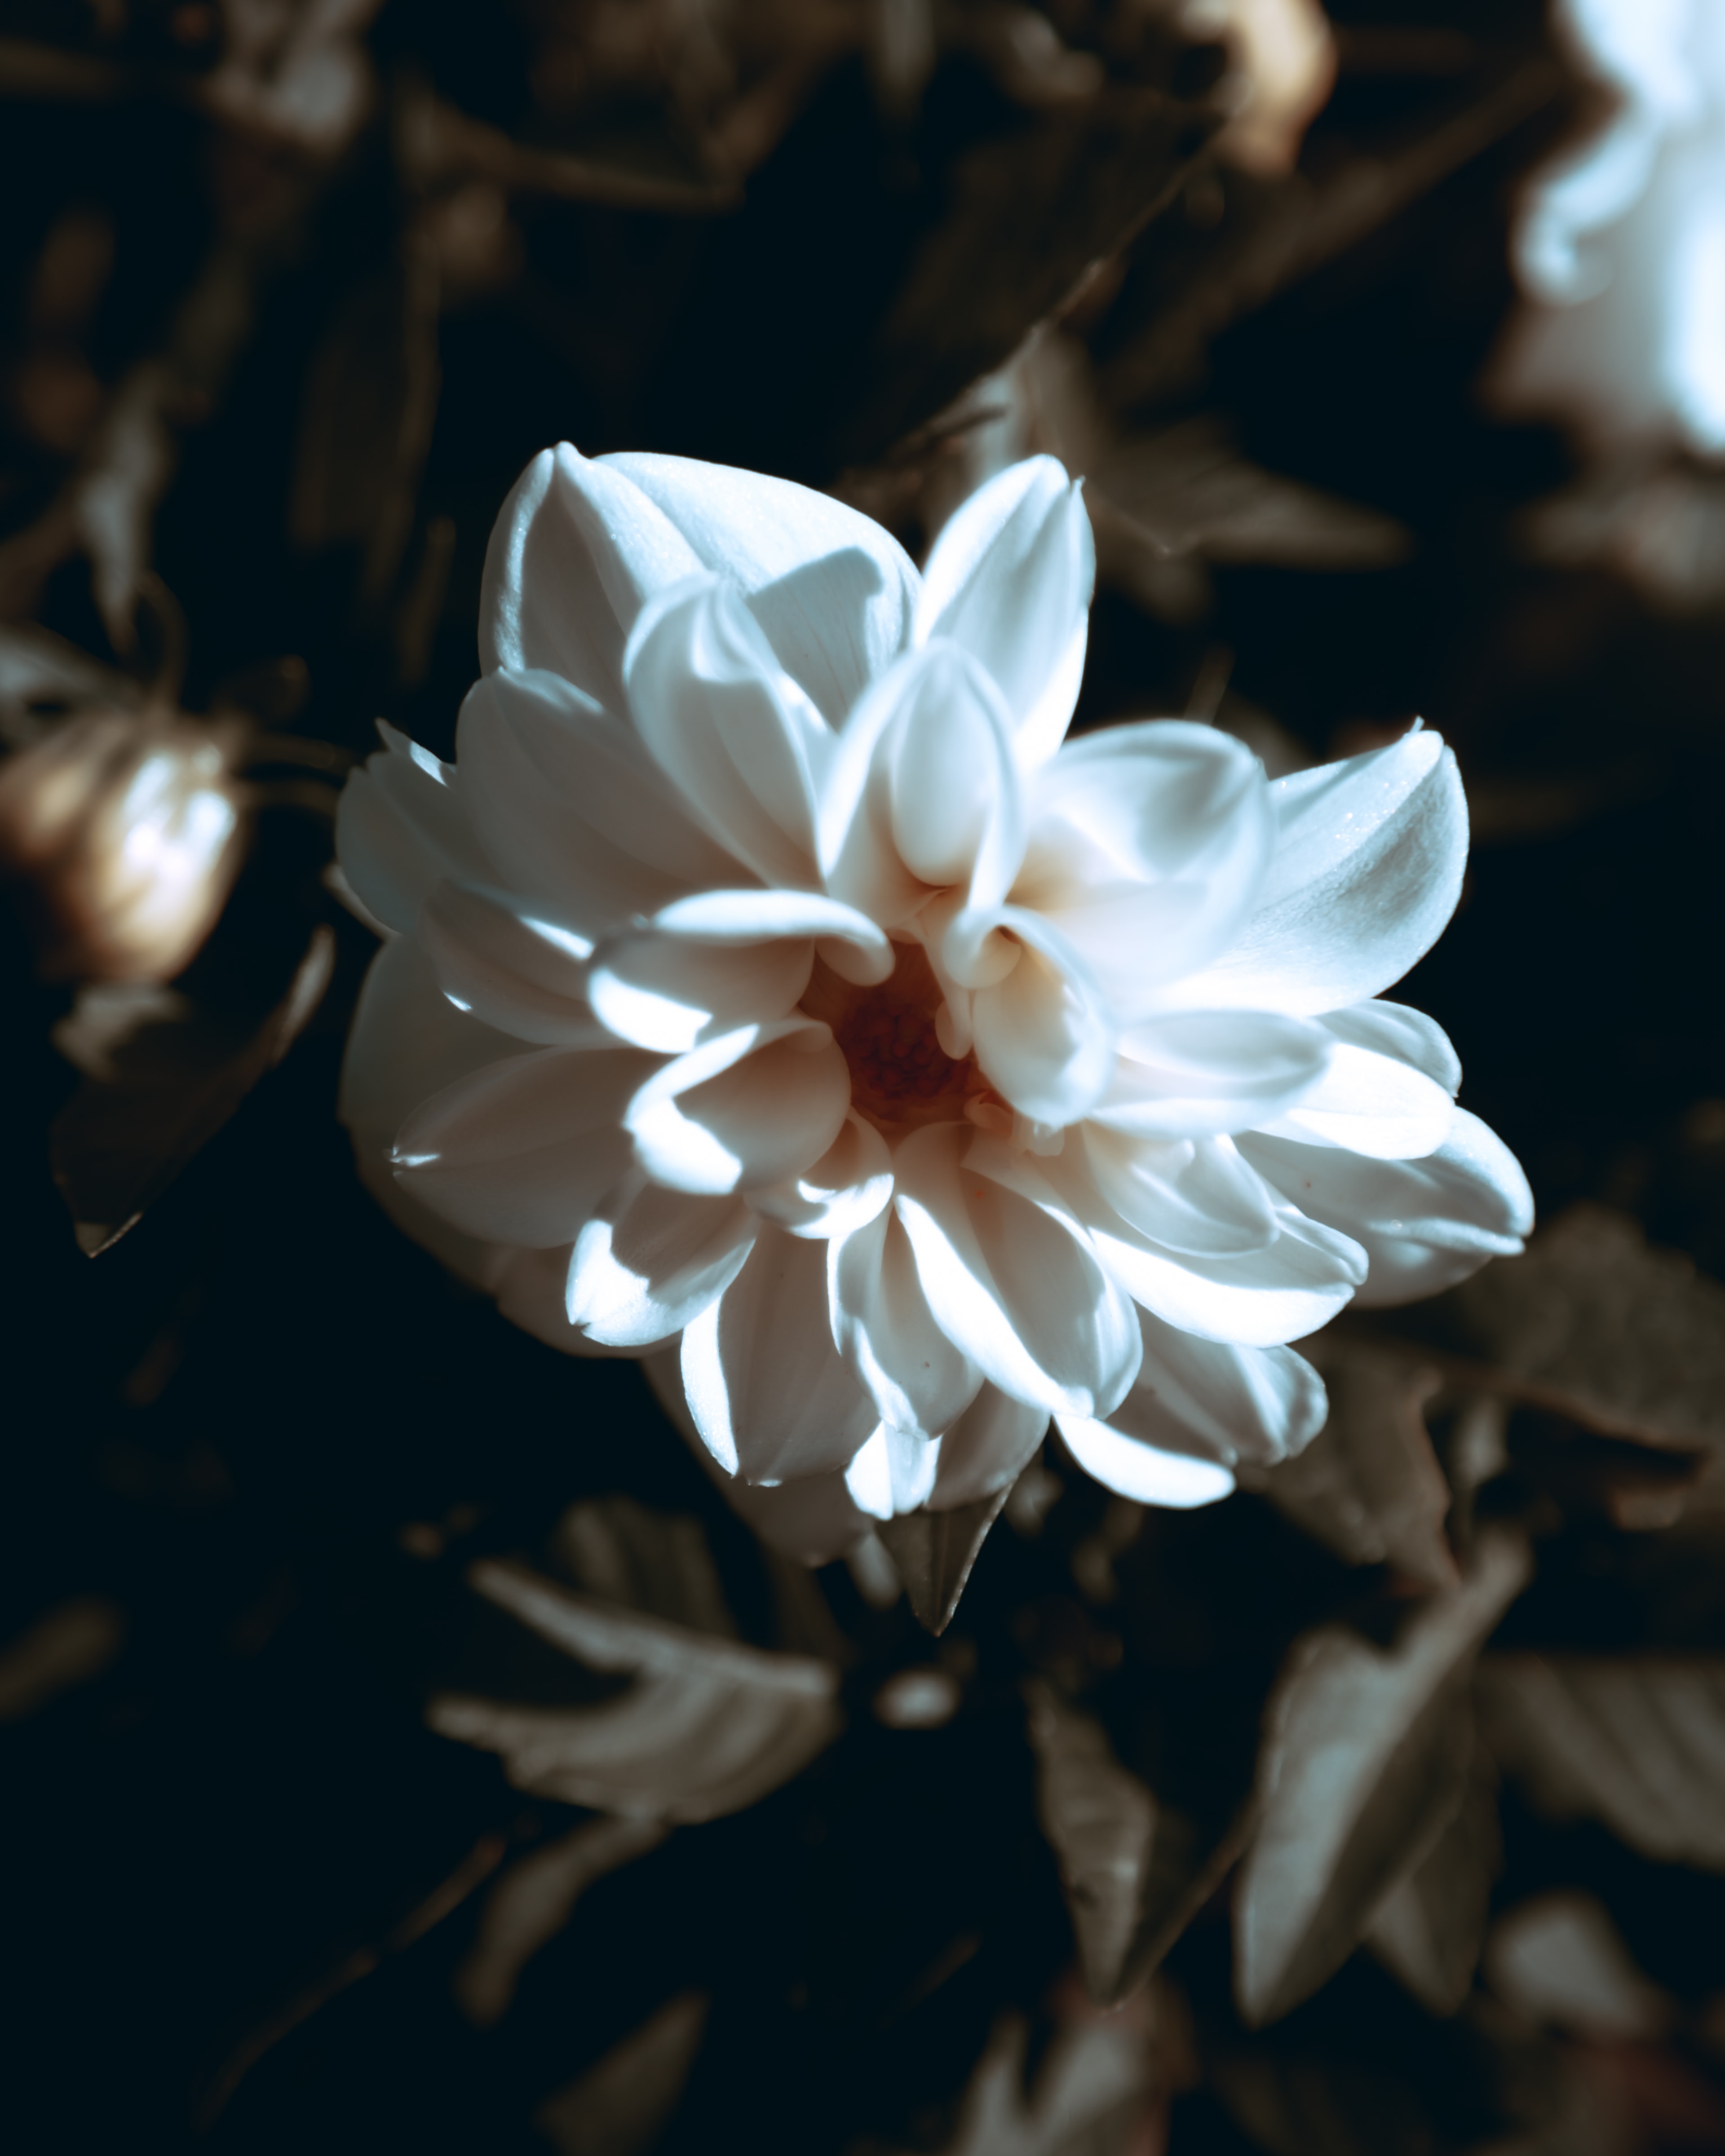 Image libre: fleur blanche, pétales, détails, fermer, belles fleurs, pétale,  fleur, nature, fleur, plante